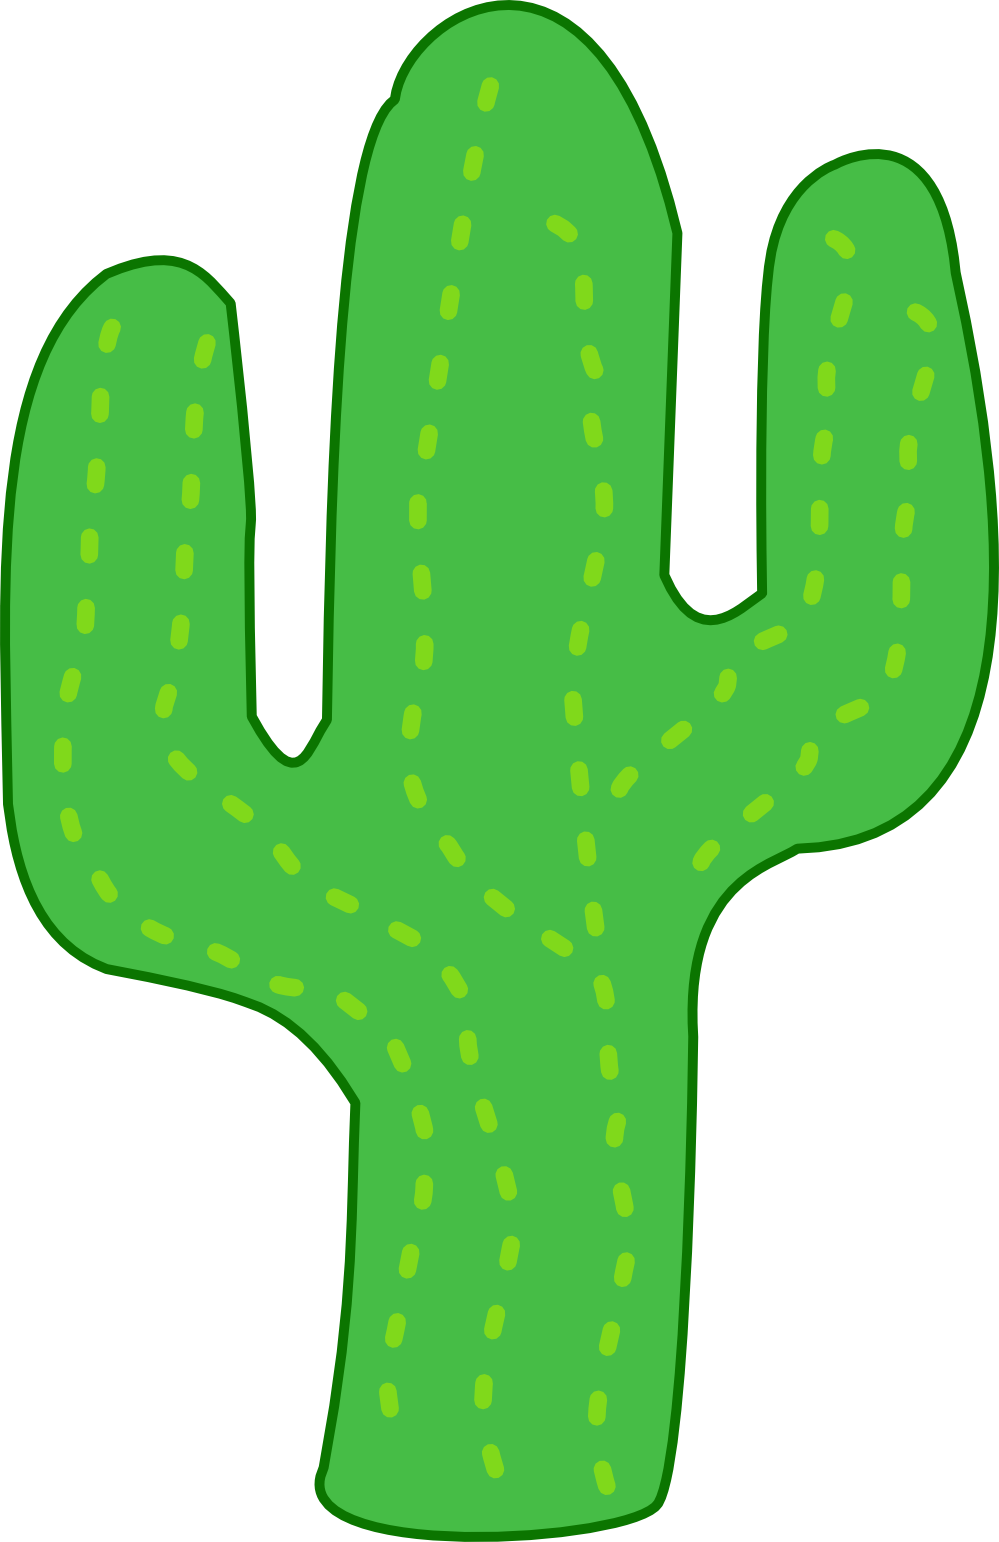 Best top cactus.